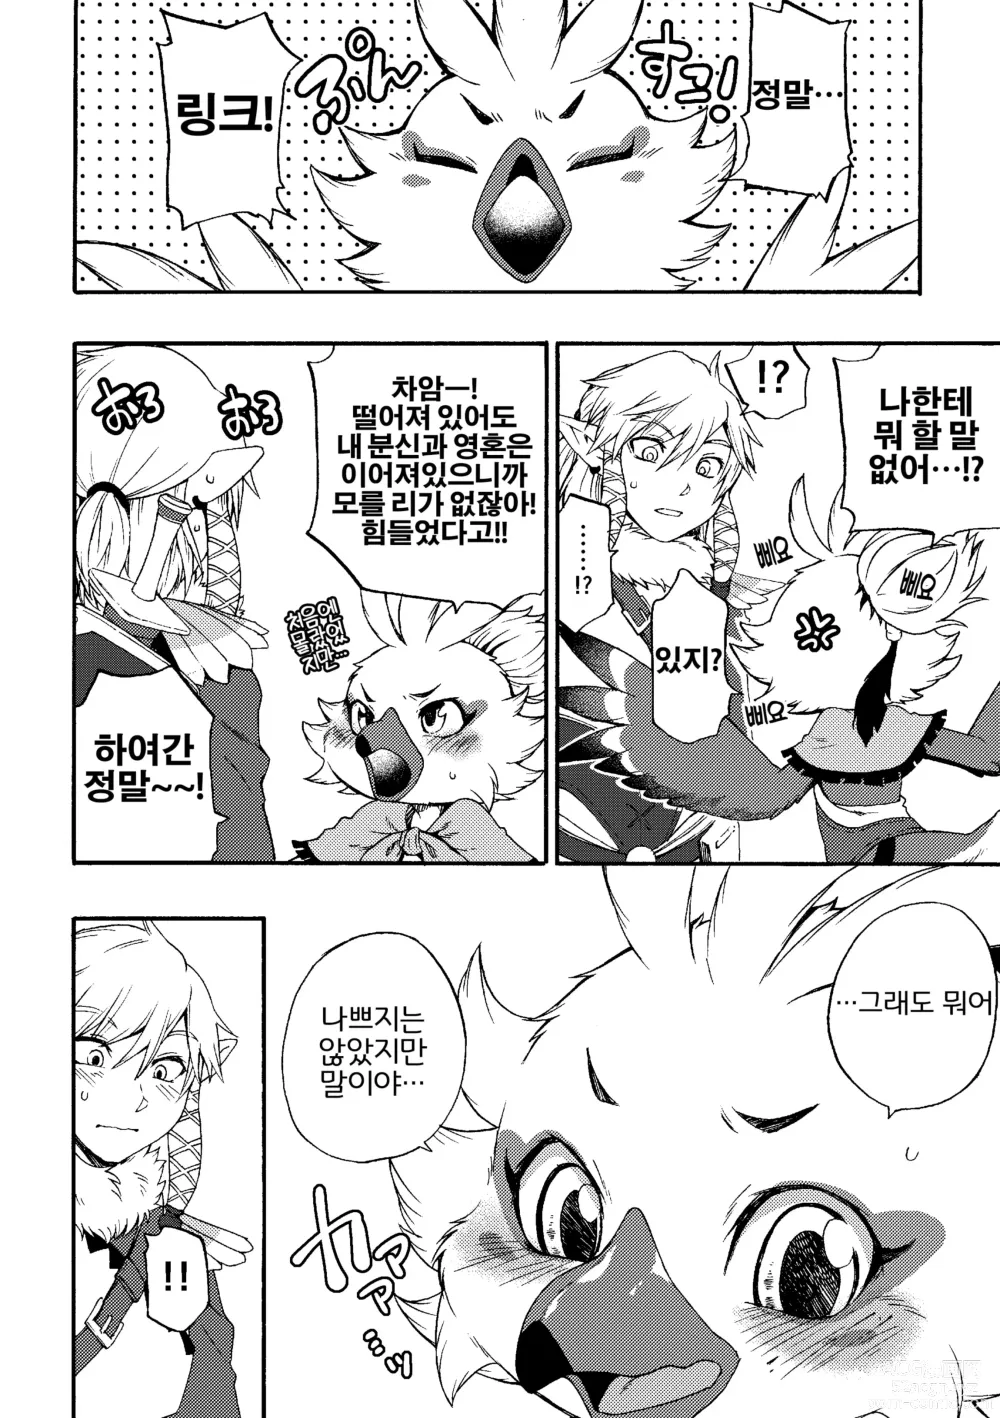 Page 22 of doujinshi 나와 나의 공감성